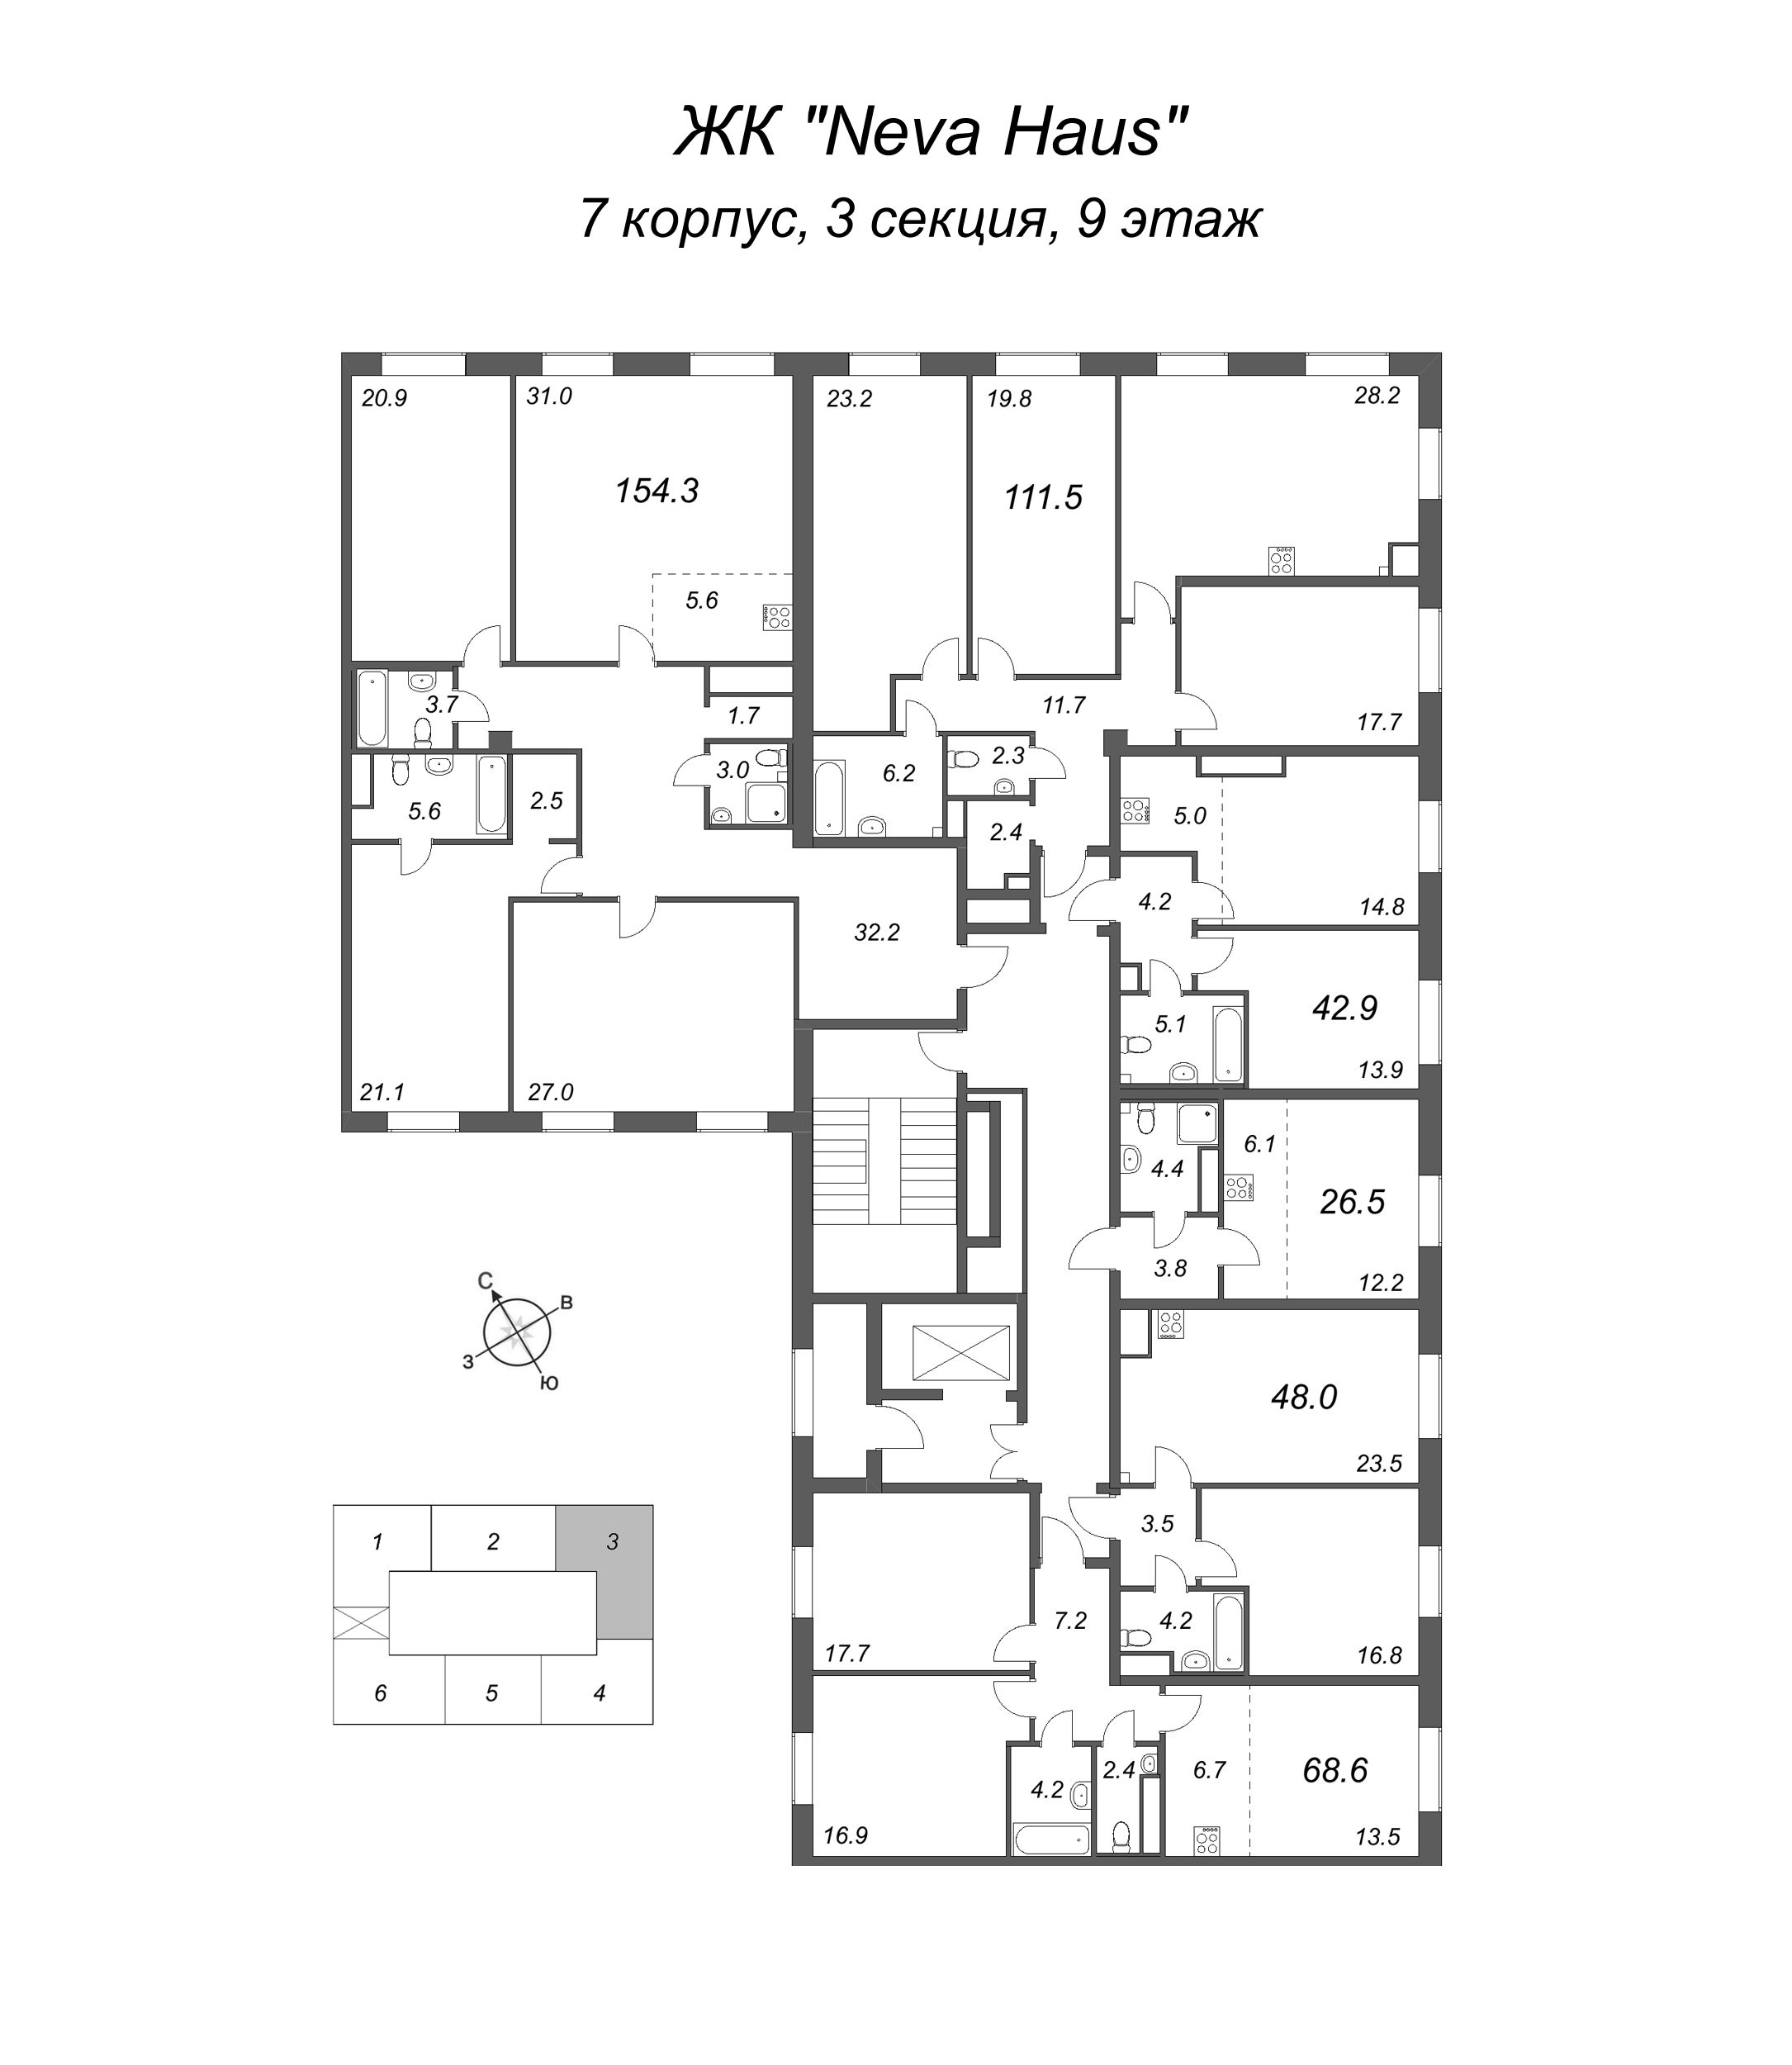 2-комнатная (Евро) квартира, 42.9 м² в ЖК "Neva Haus" - планировка этажа